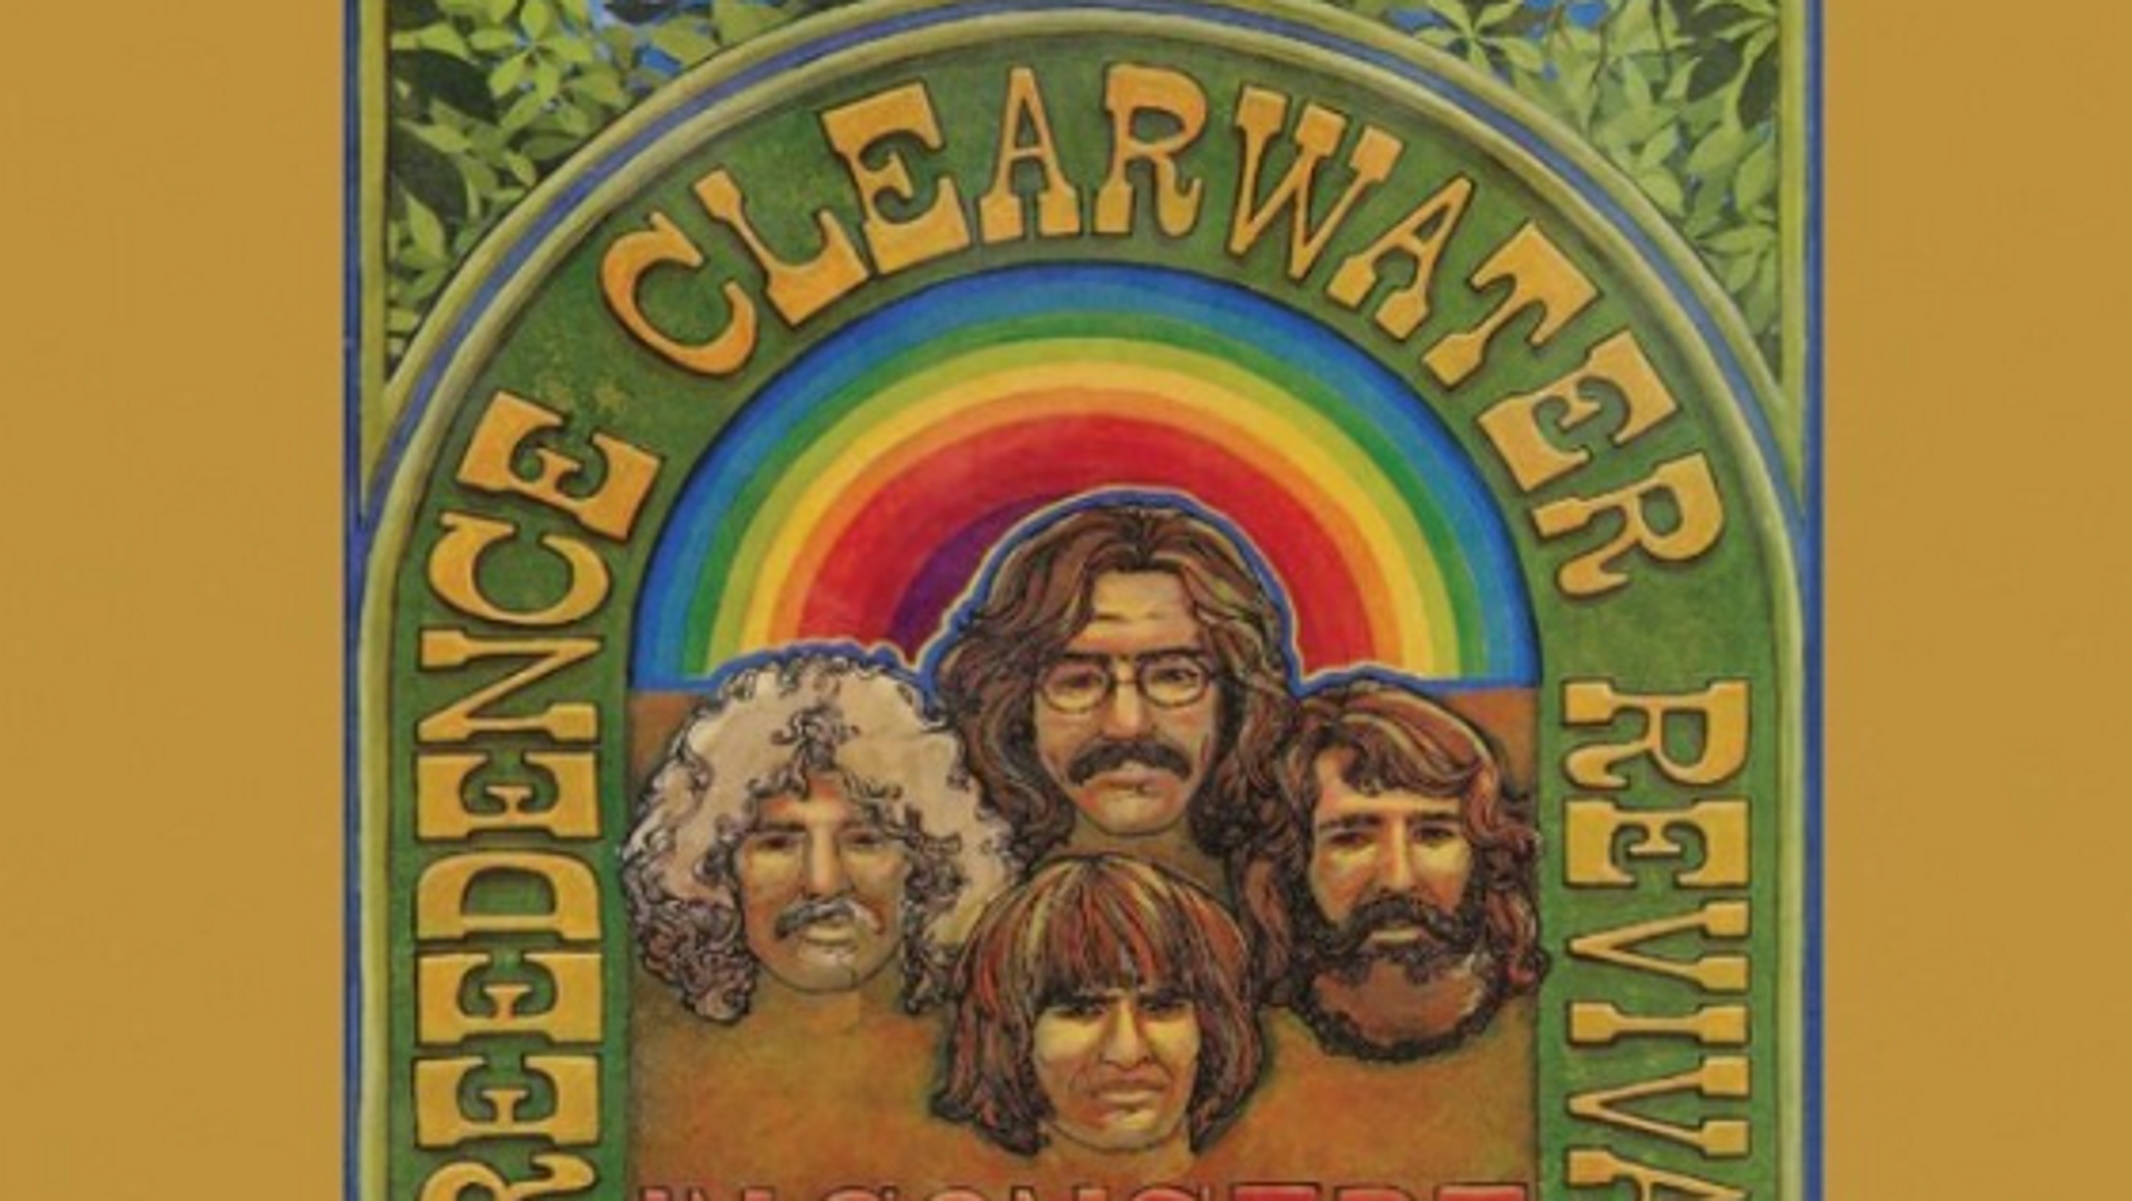 Οι Creedence Clearwater Revival «ξαναζωντανεύουν» στο Albert Hall μετά από 52 χρόνια